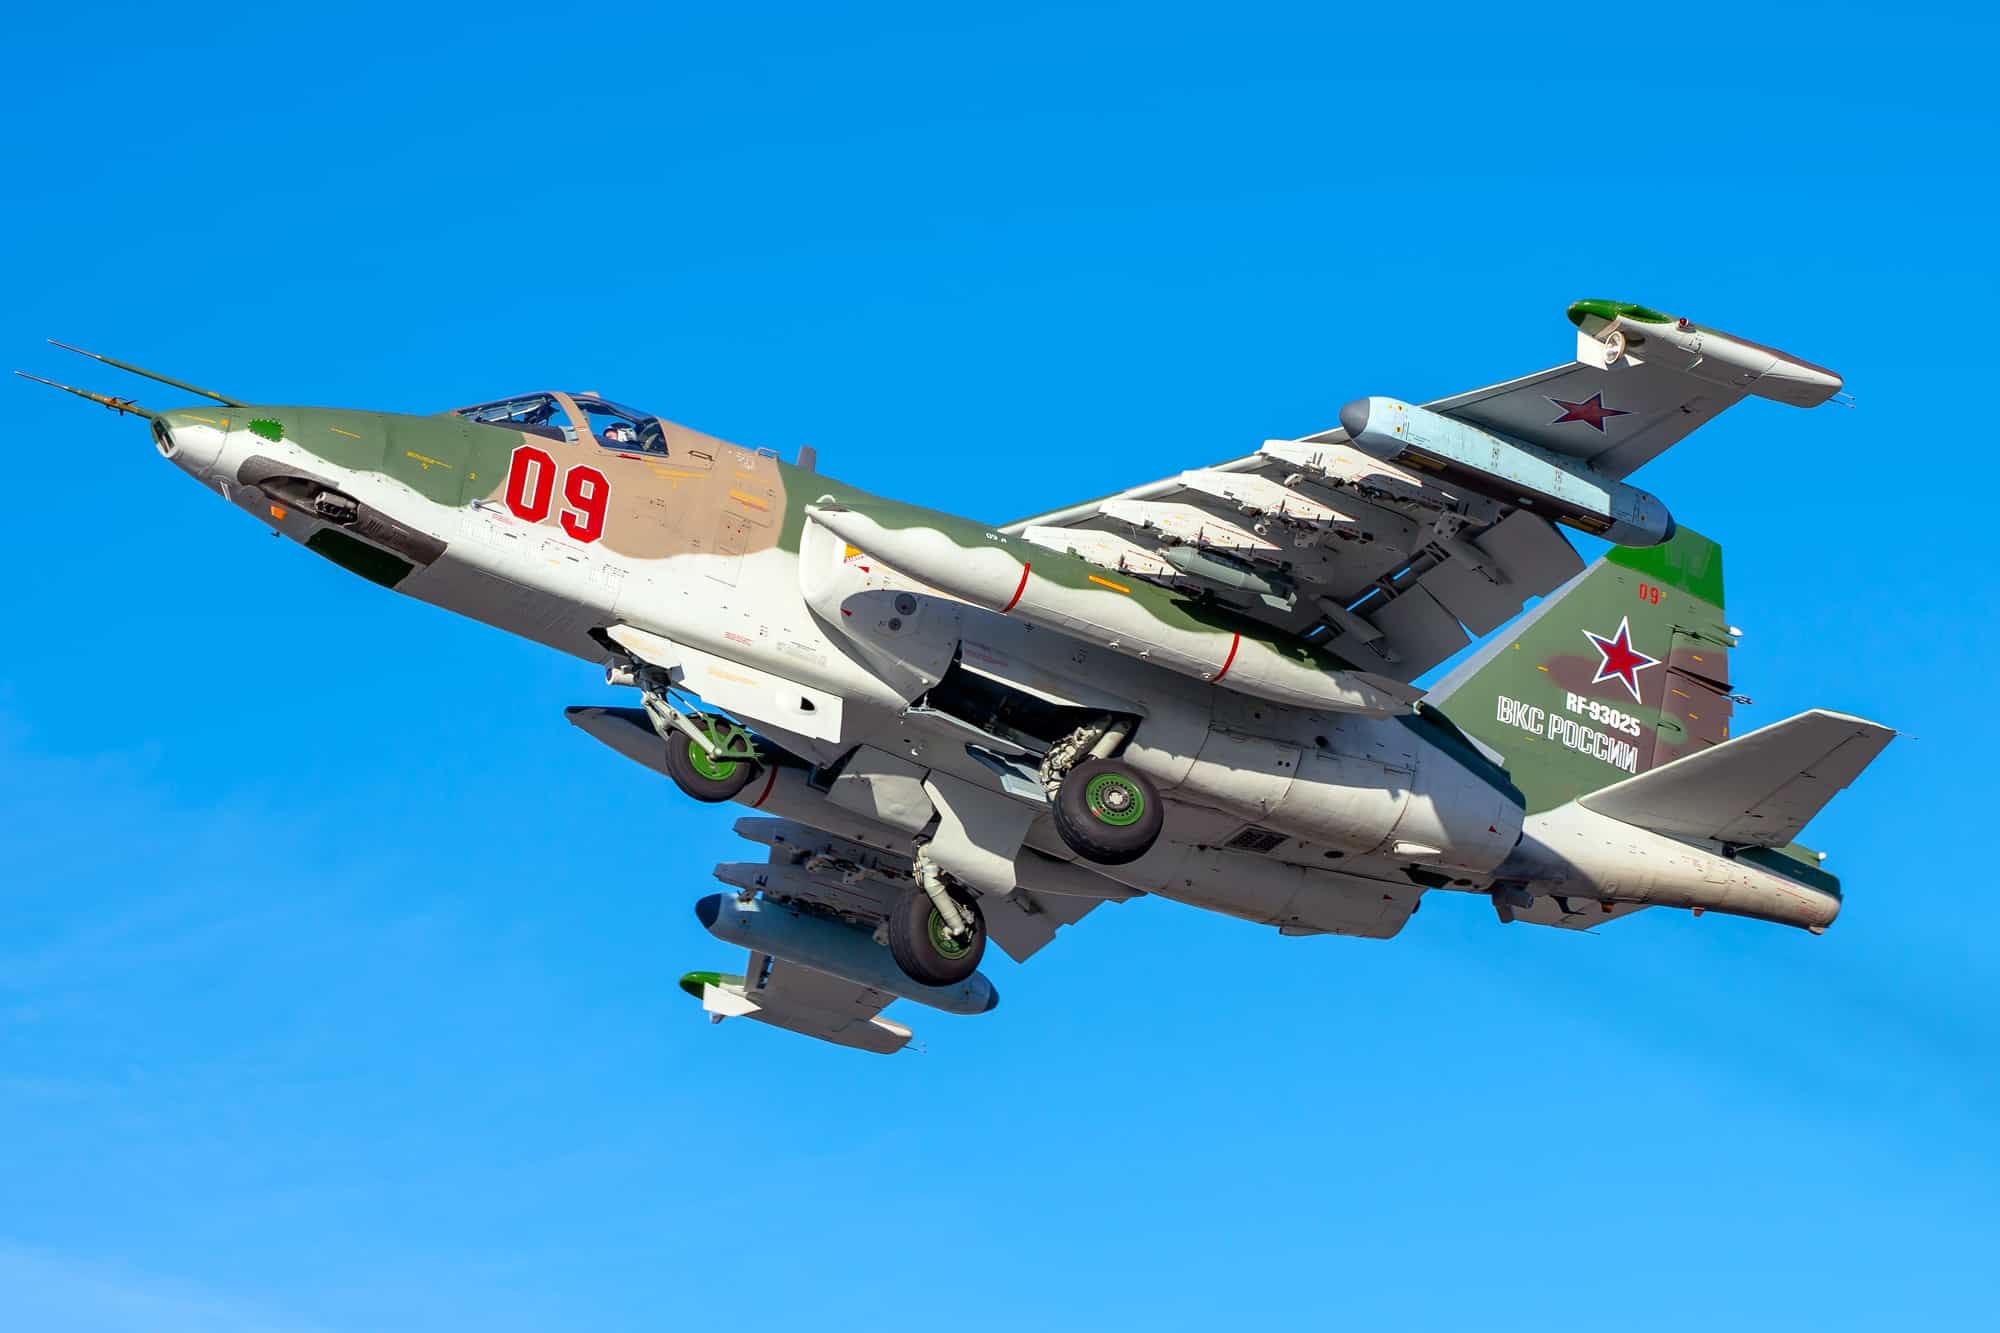 Un autre Su-25 s'autodétruit en Russie